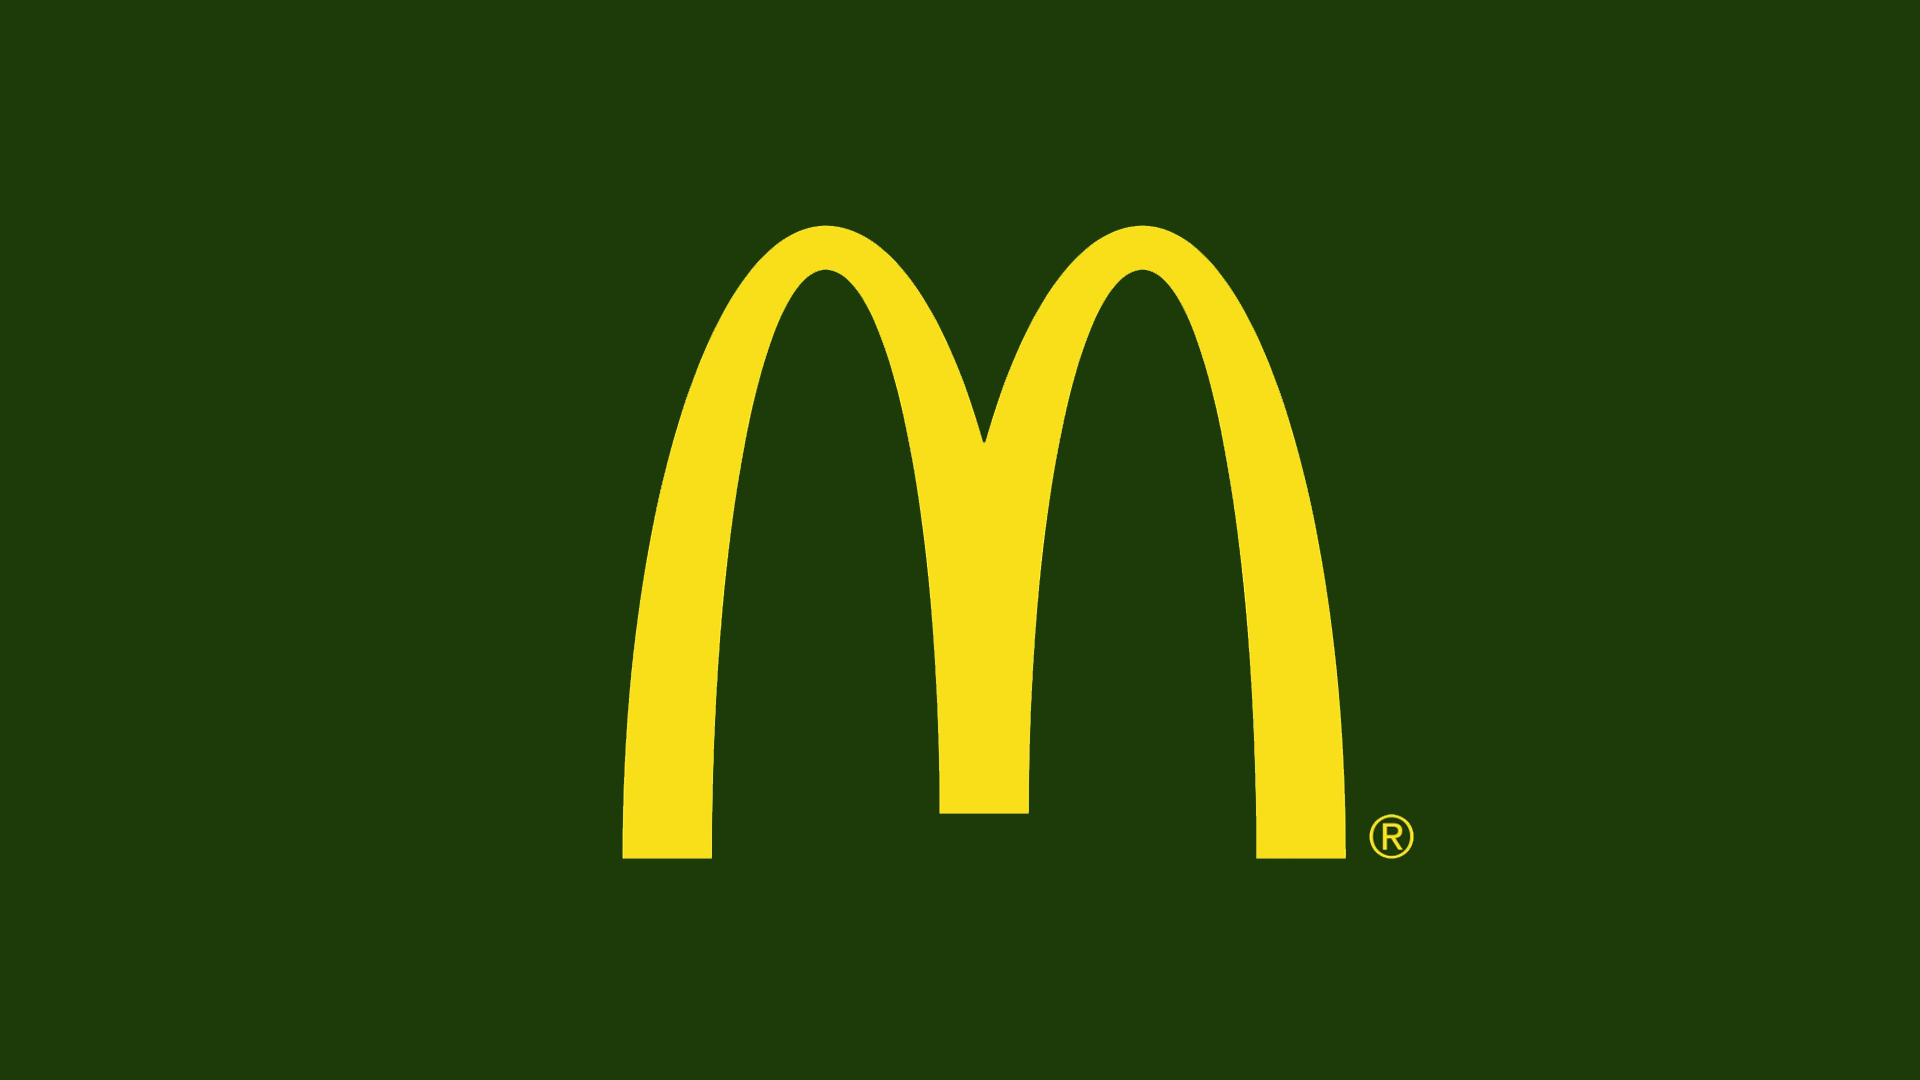 McDonald's HD Wallpaper